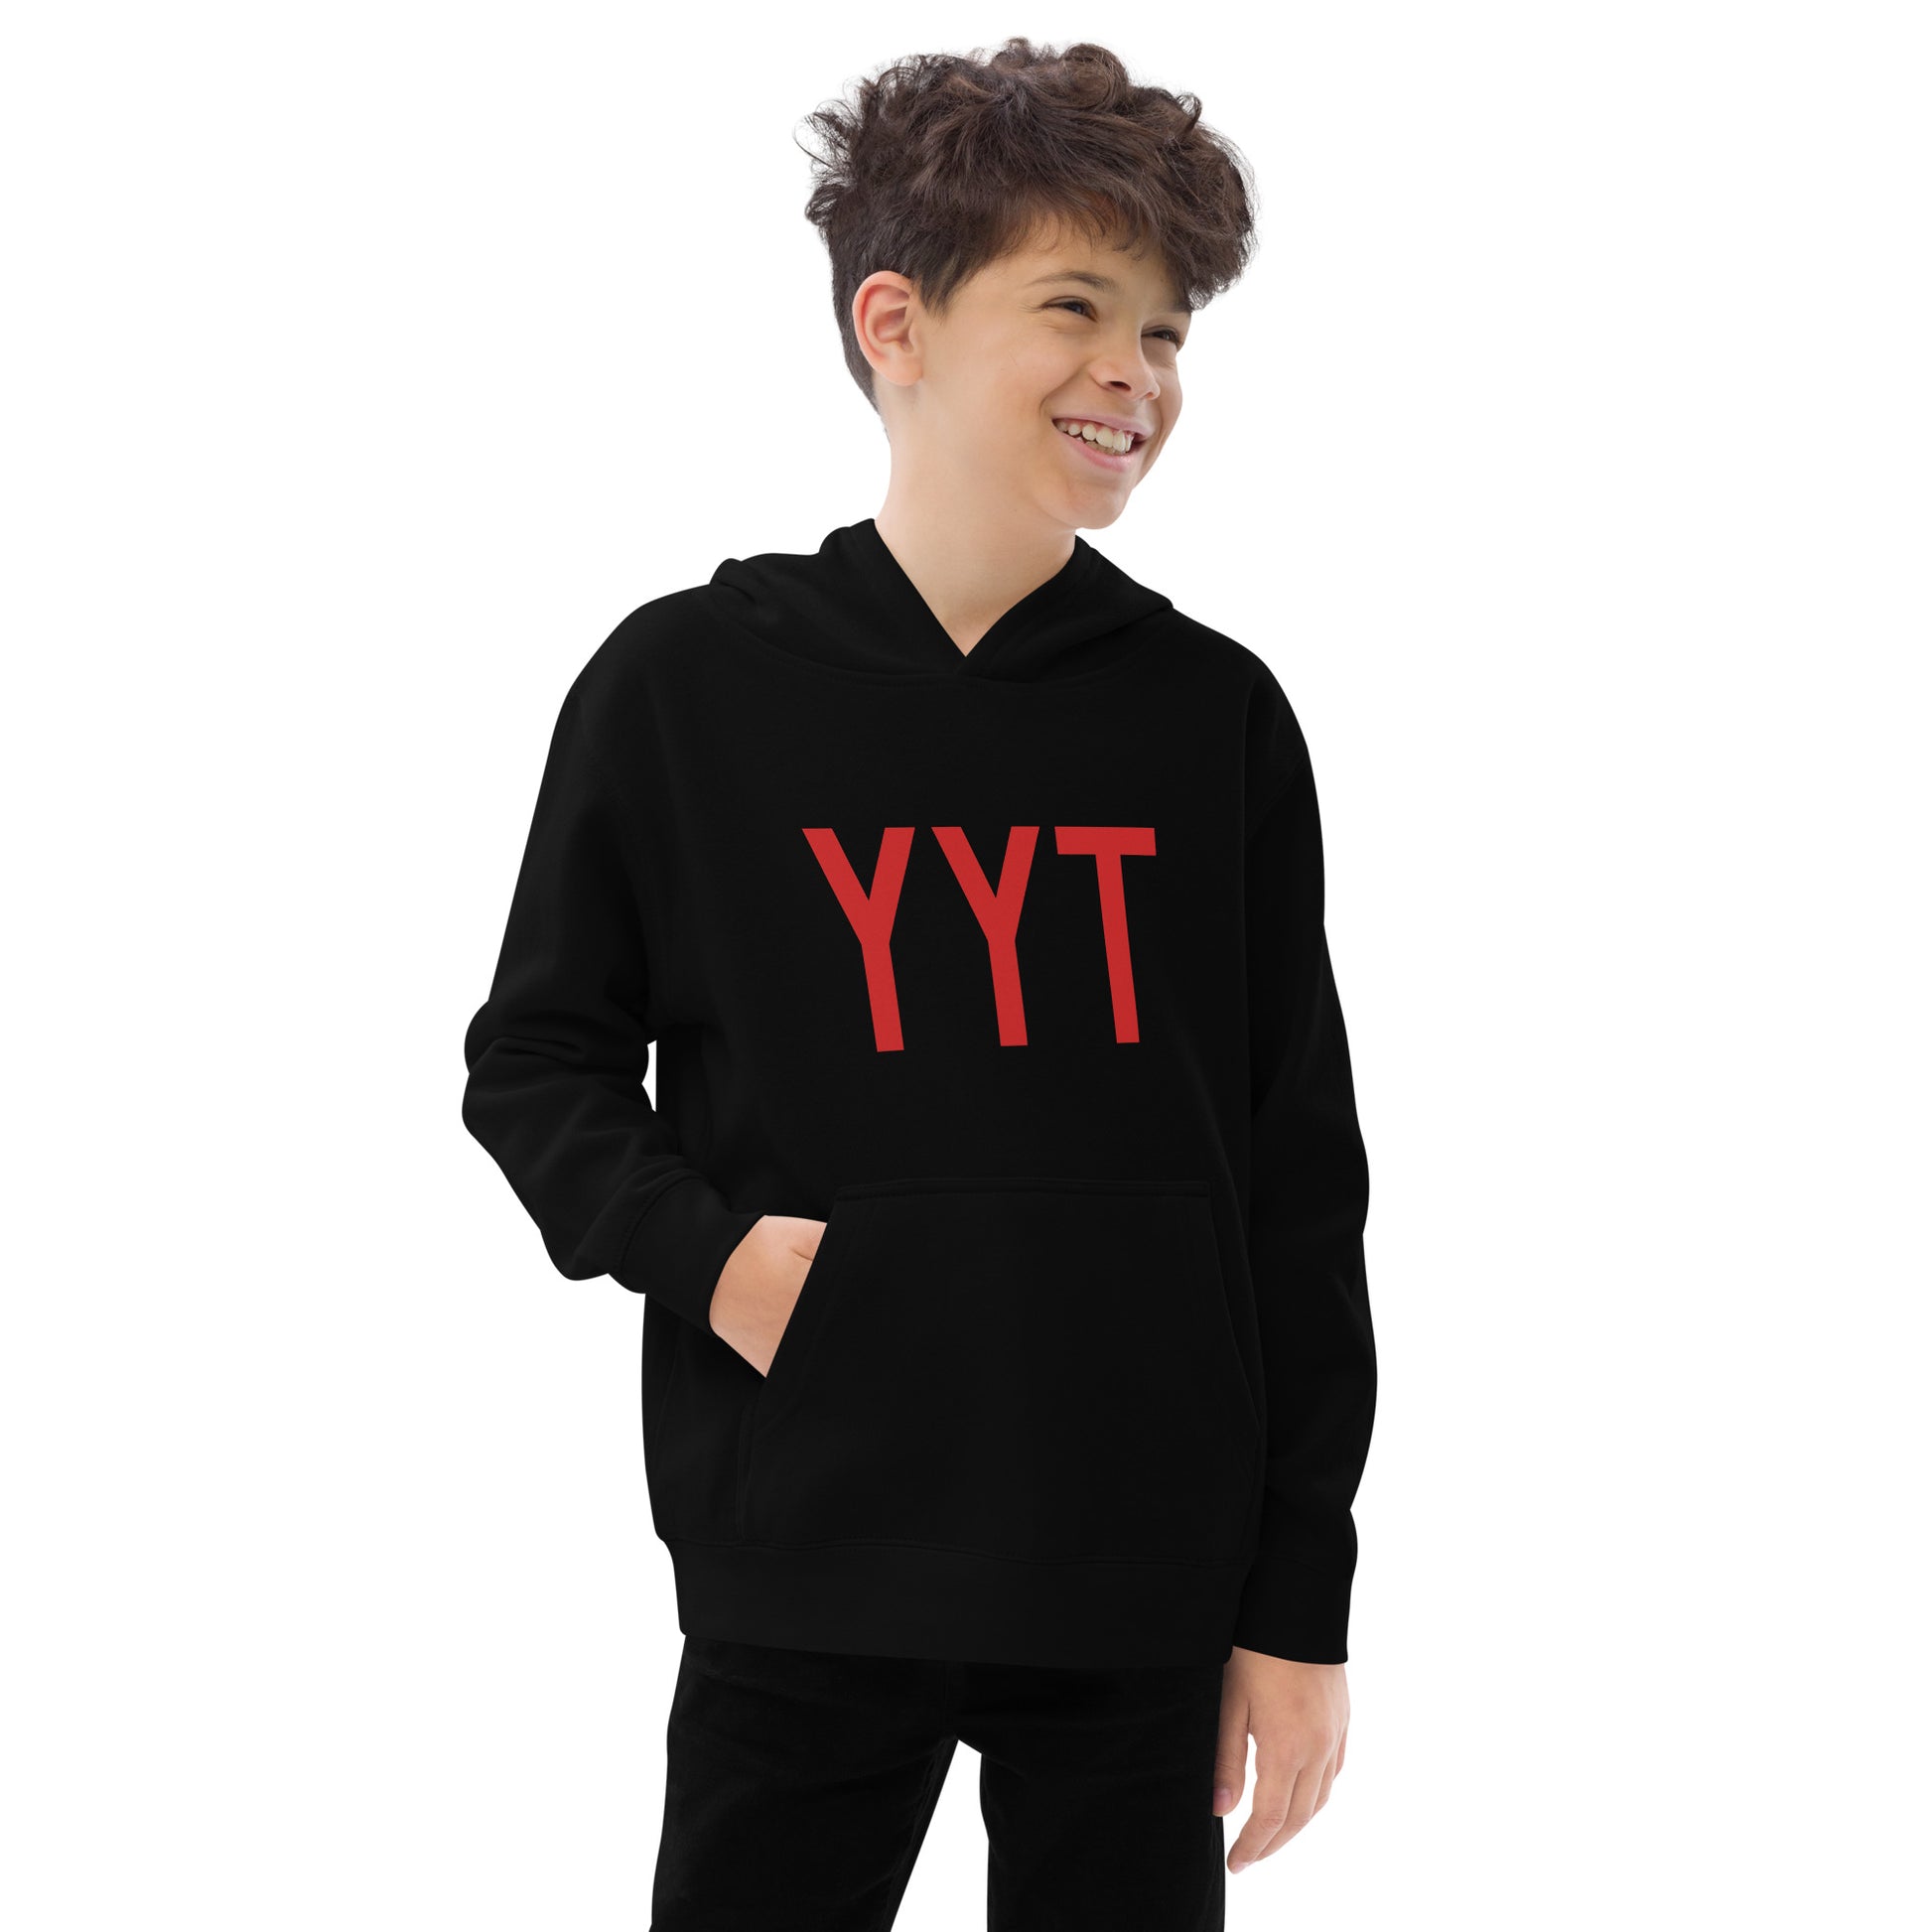 Airport Code Kid's Hoodie • YYT St. John's • YHM Designs - Image 05